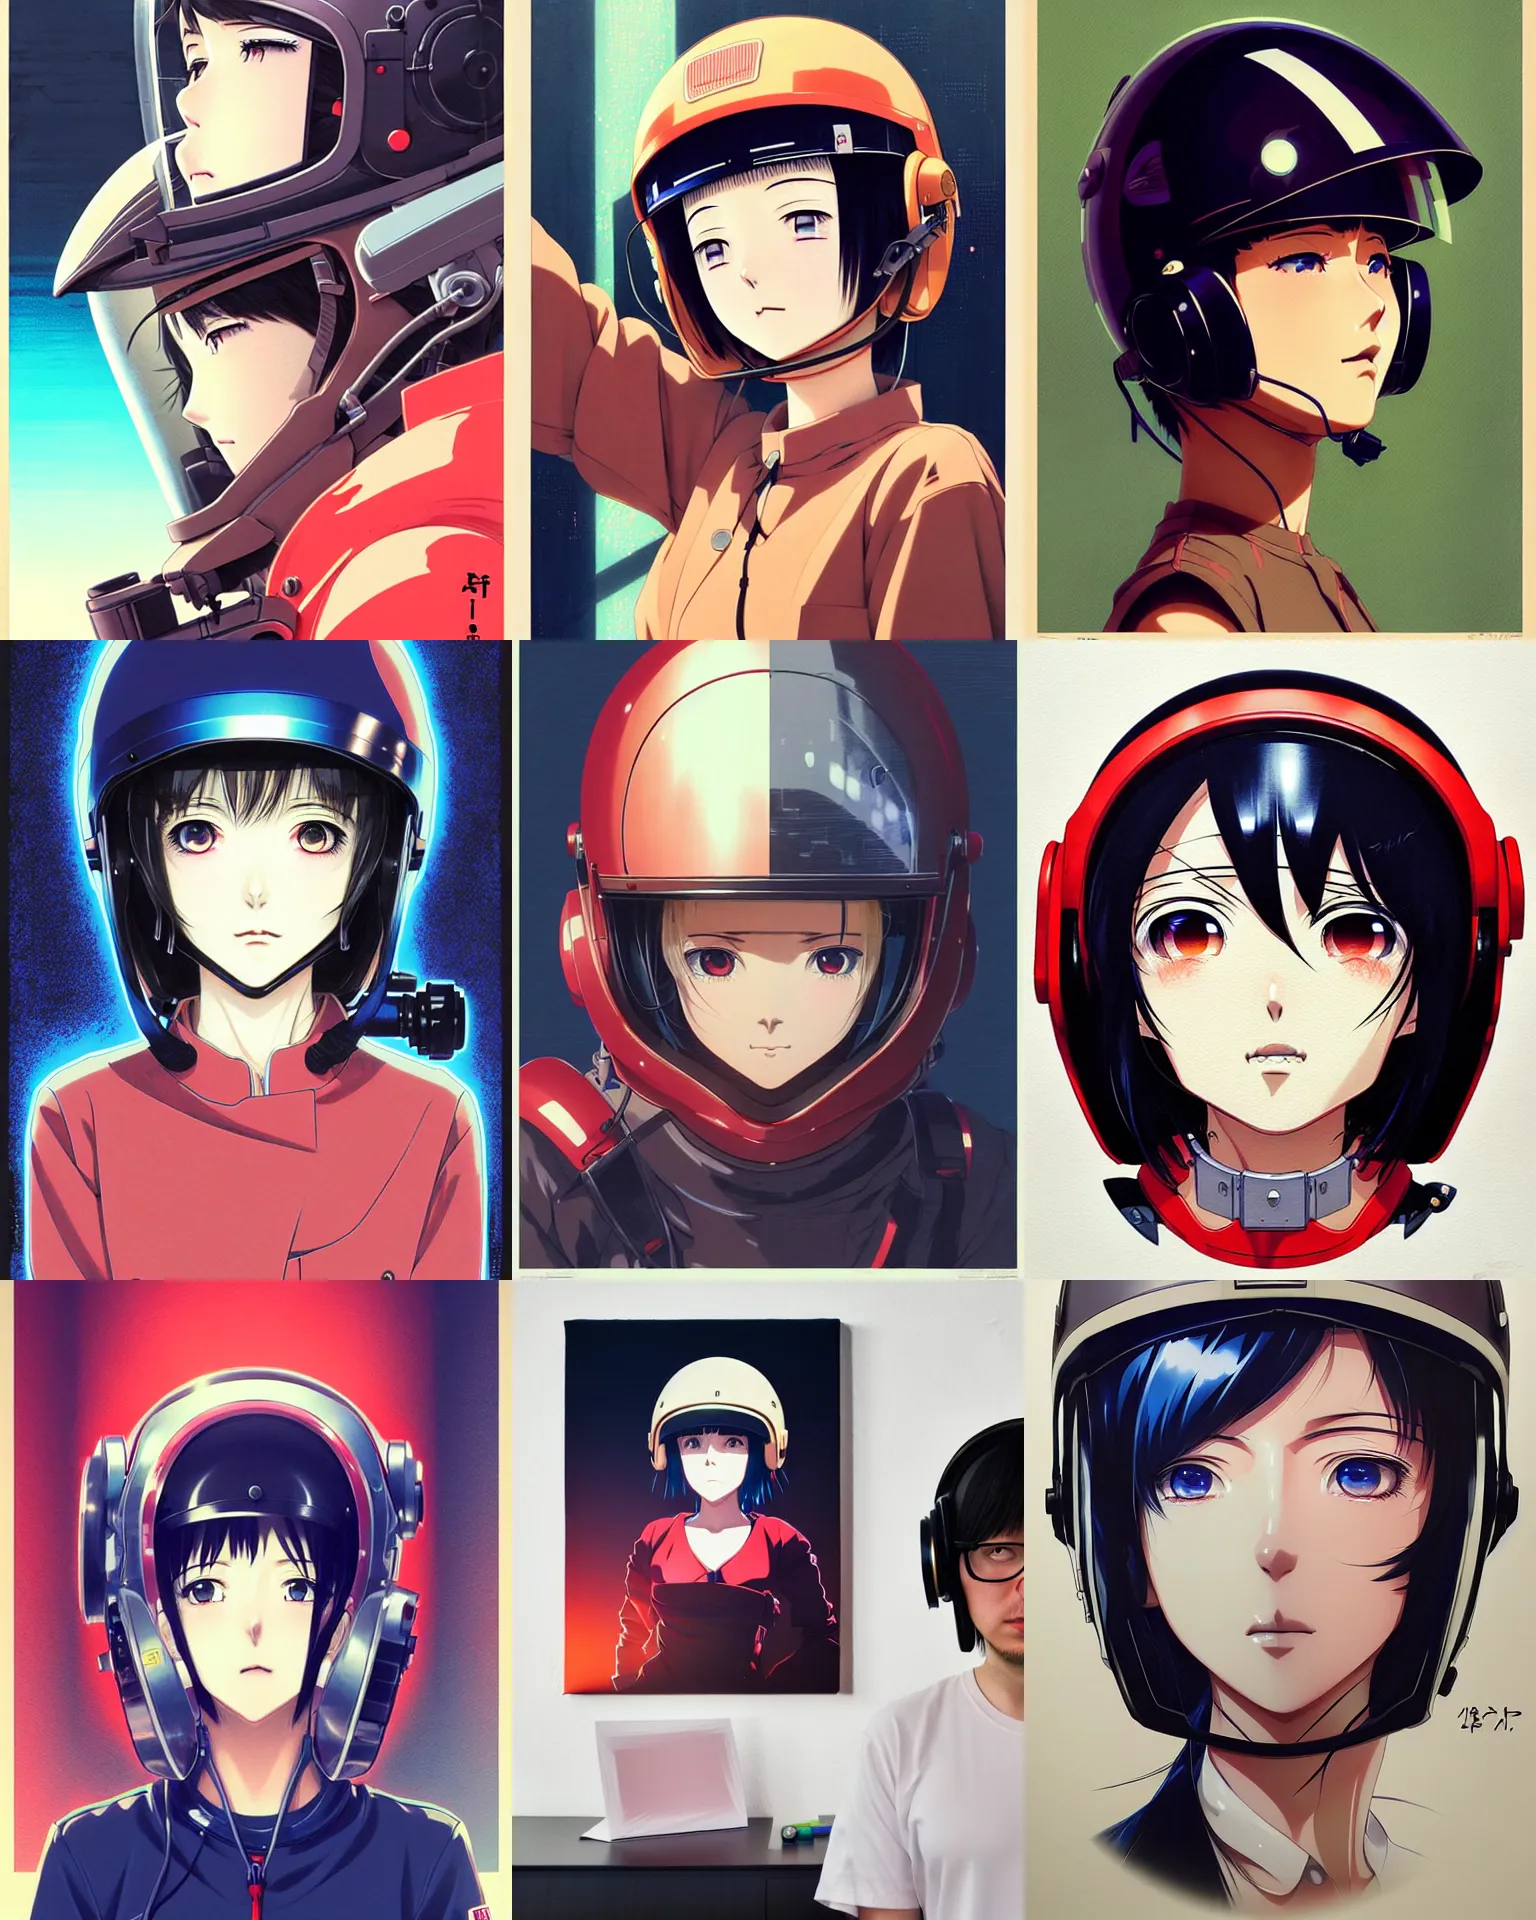 Engineer, KALLE(JunYoung Shin) | Anime character design, Cyberpunk  character, Female character design